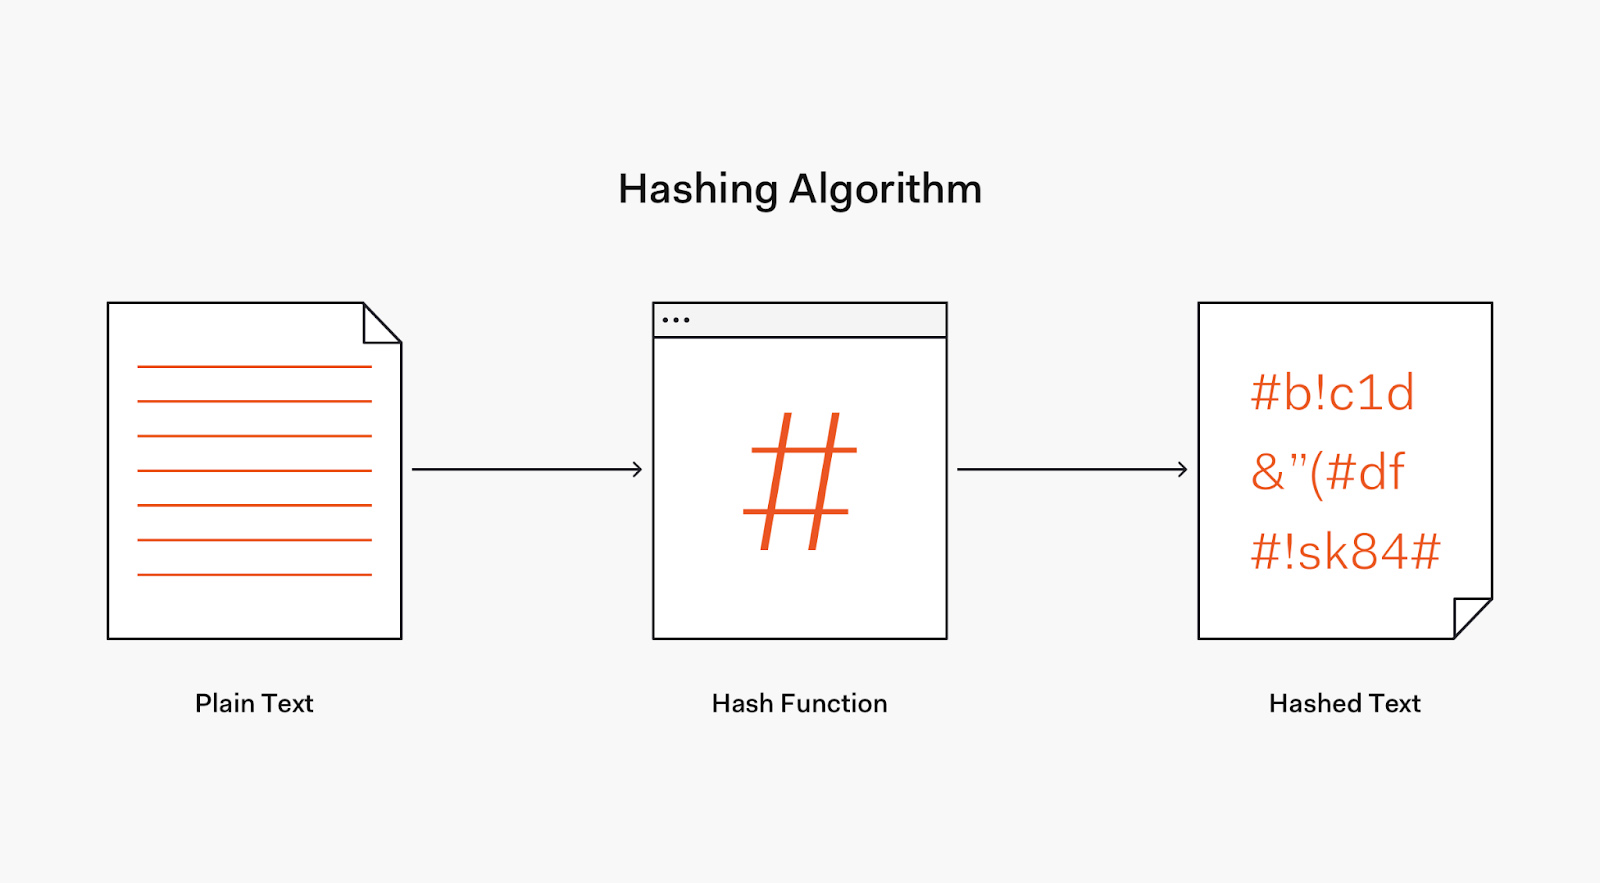 哈希算法将明文密码转换为哈希文本。